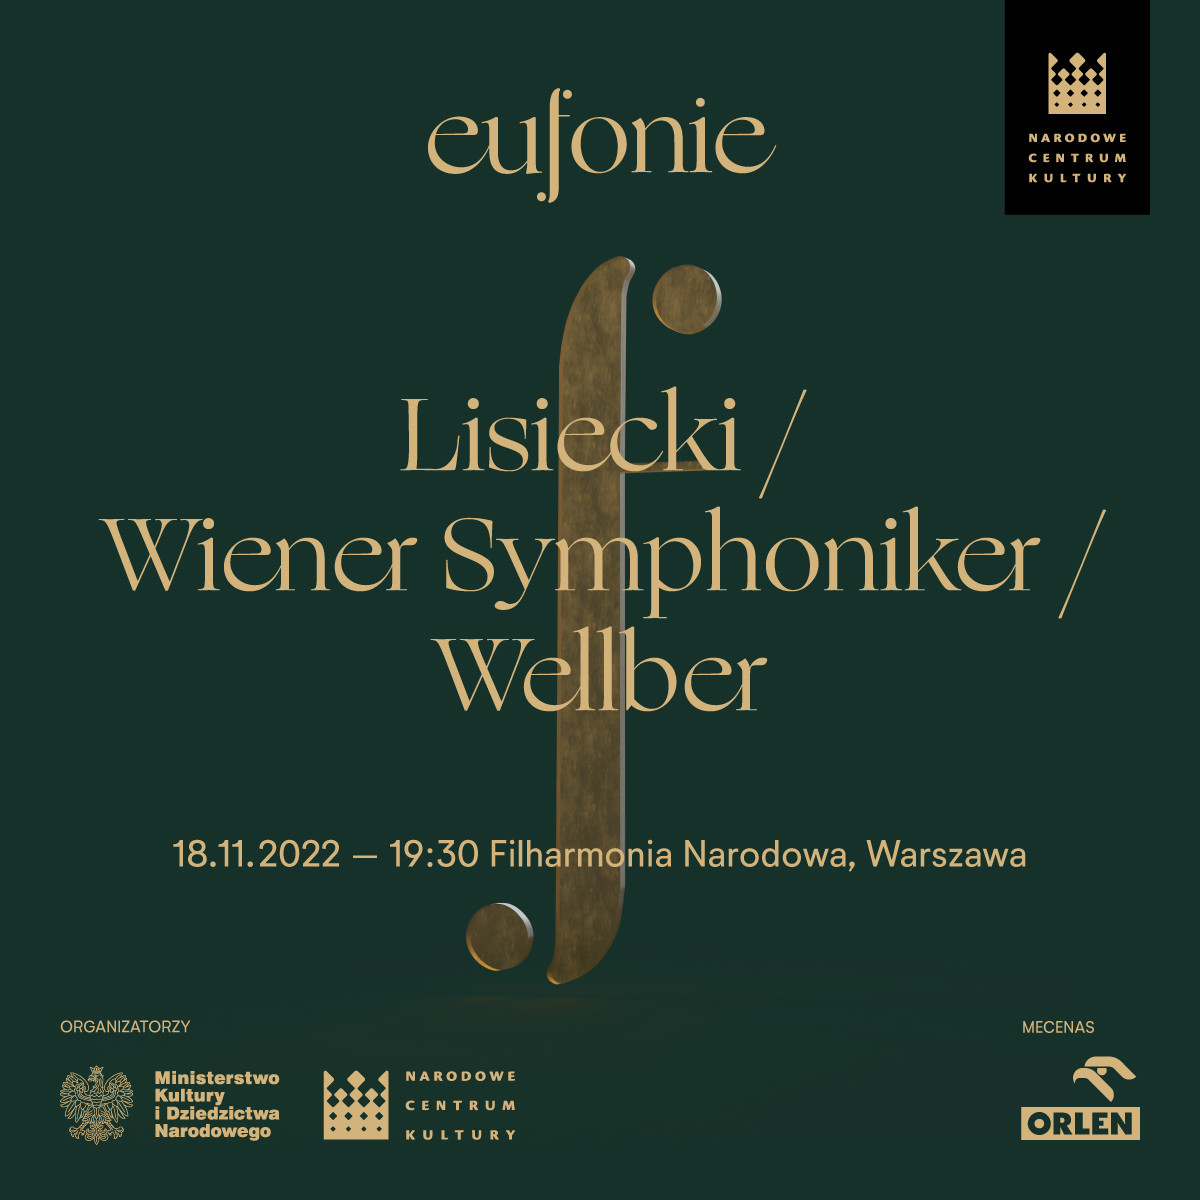 Symfonicy Wiedeńscy z Janem Lisieckim inaugurują festiwal Eufonie